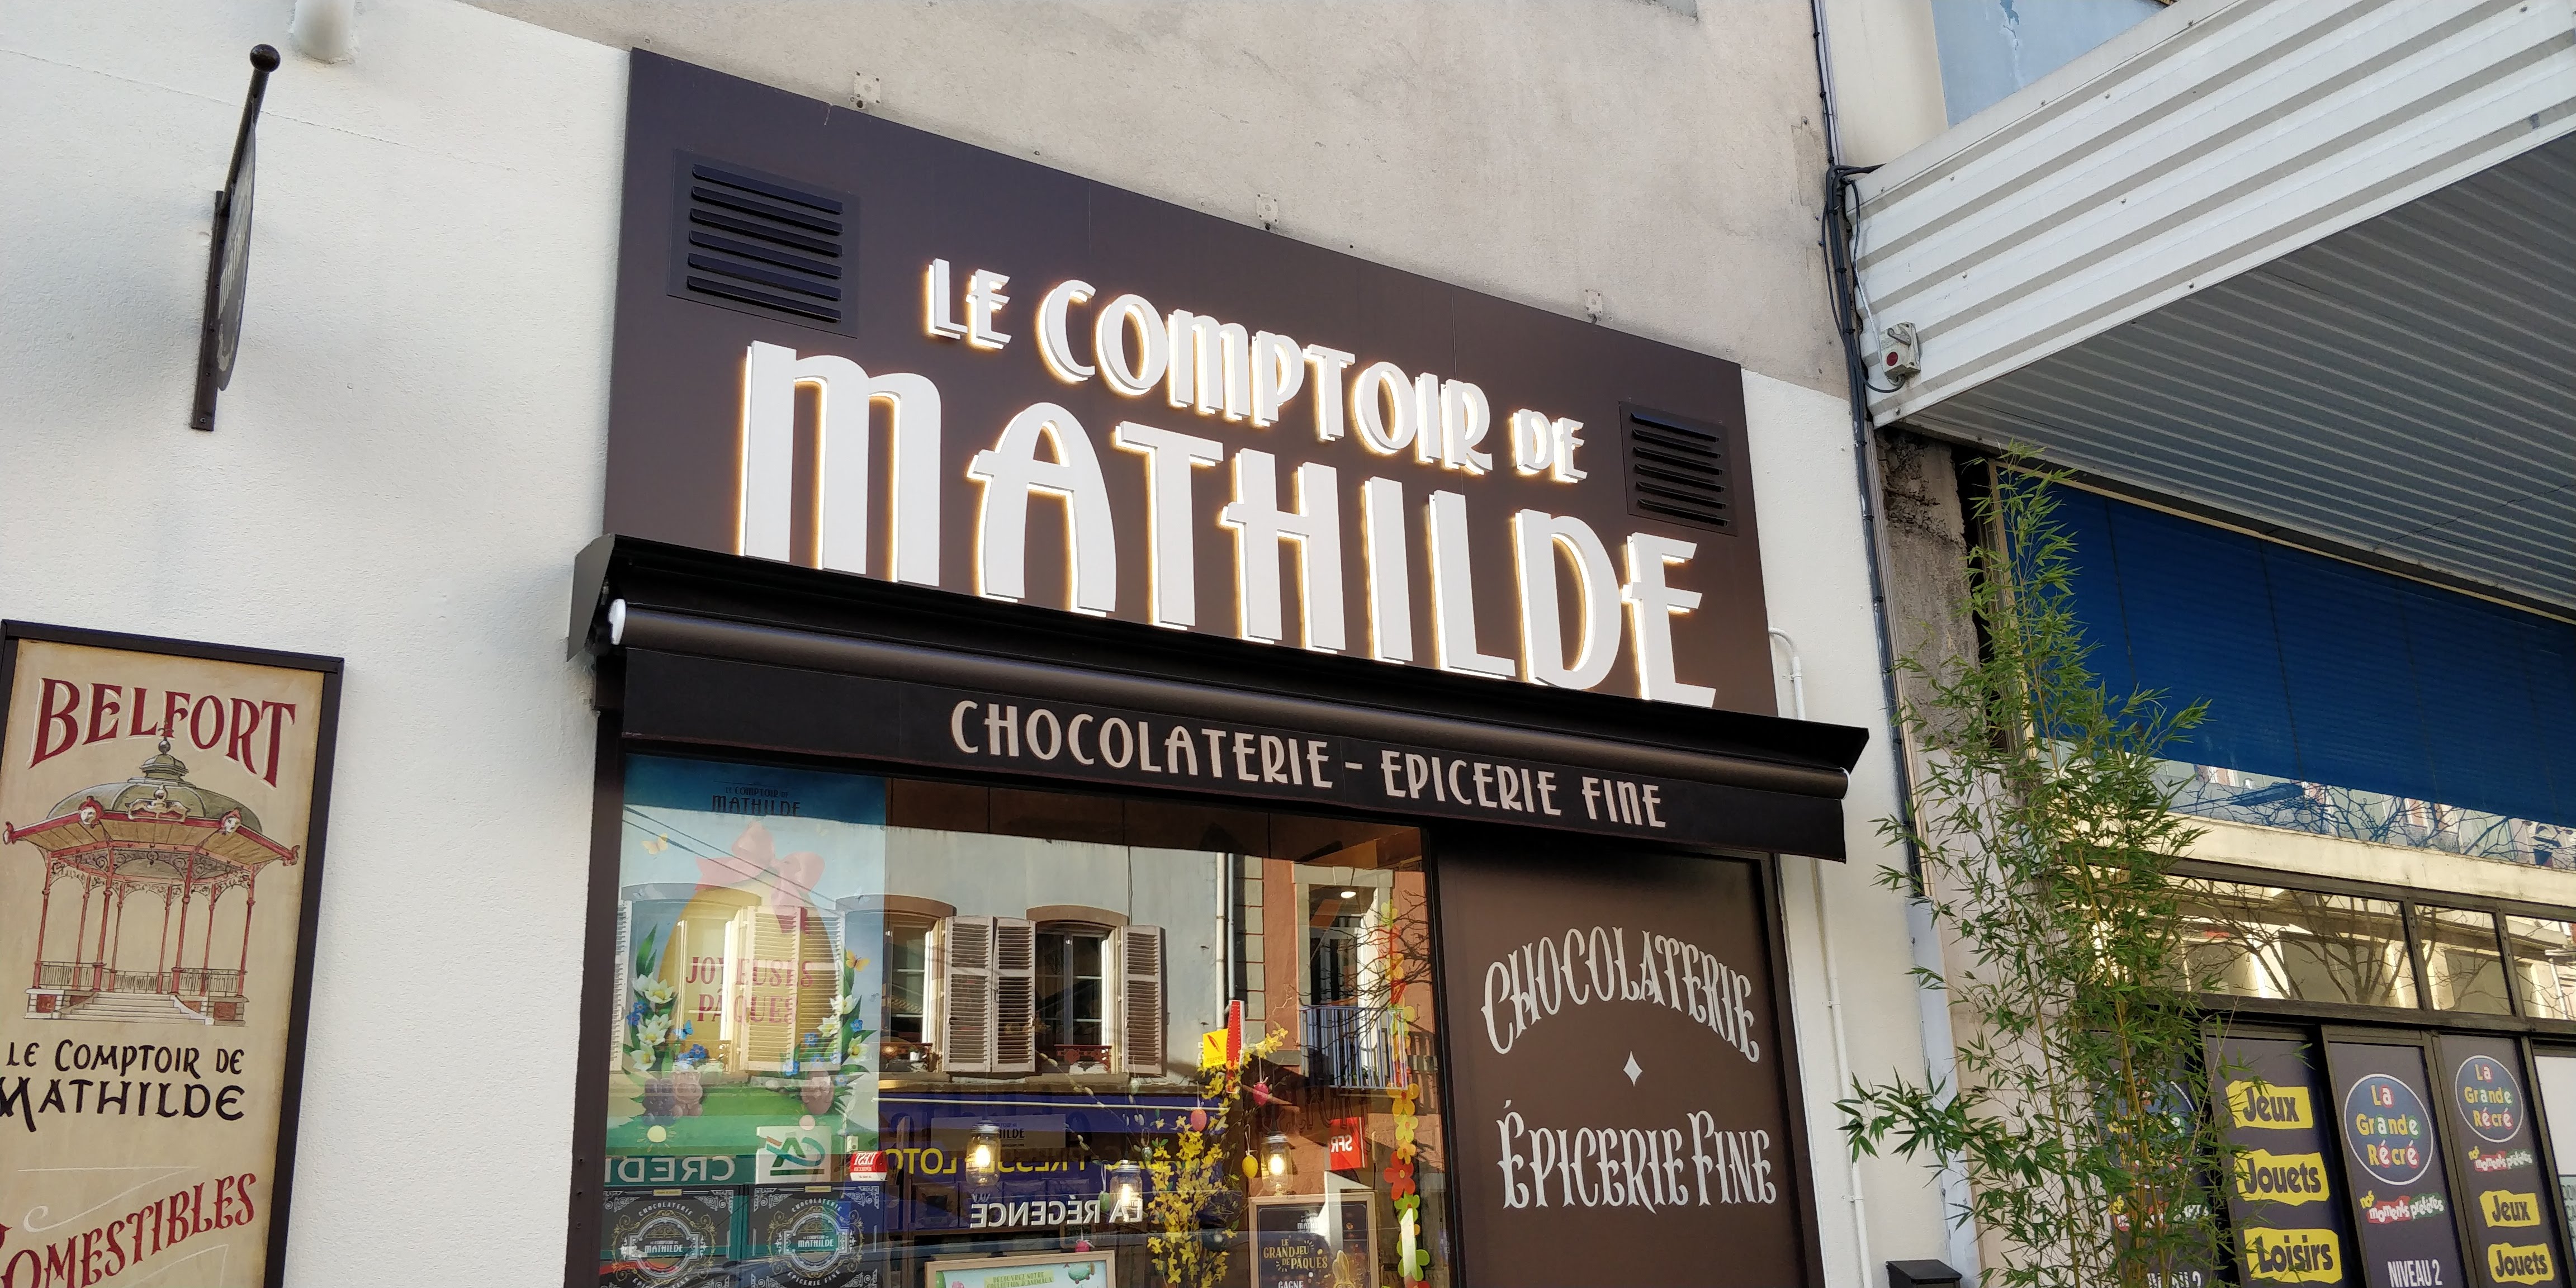 Le Comptoir de Mathilde Claira, Commerce